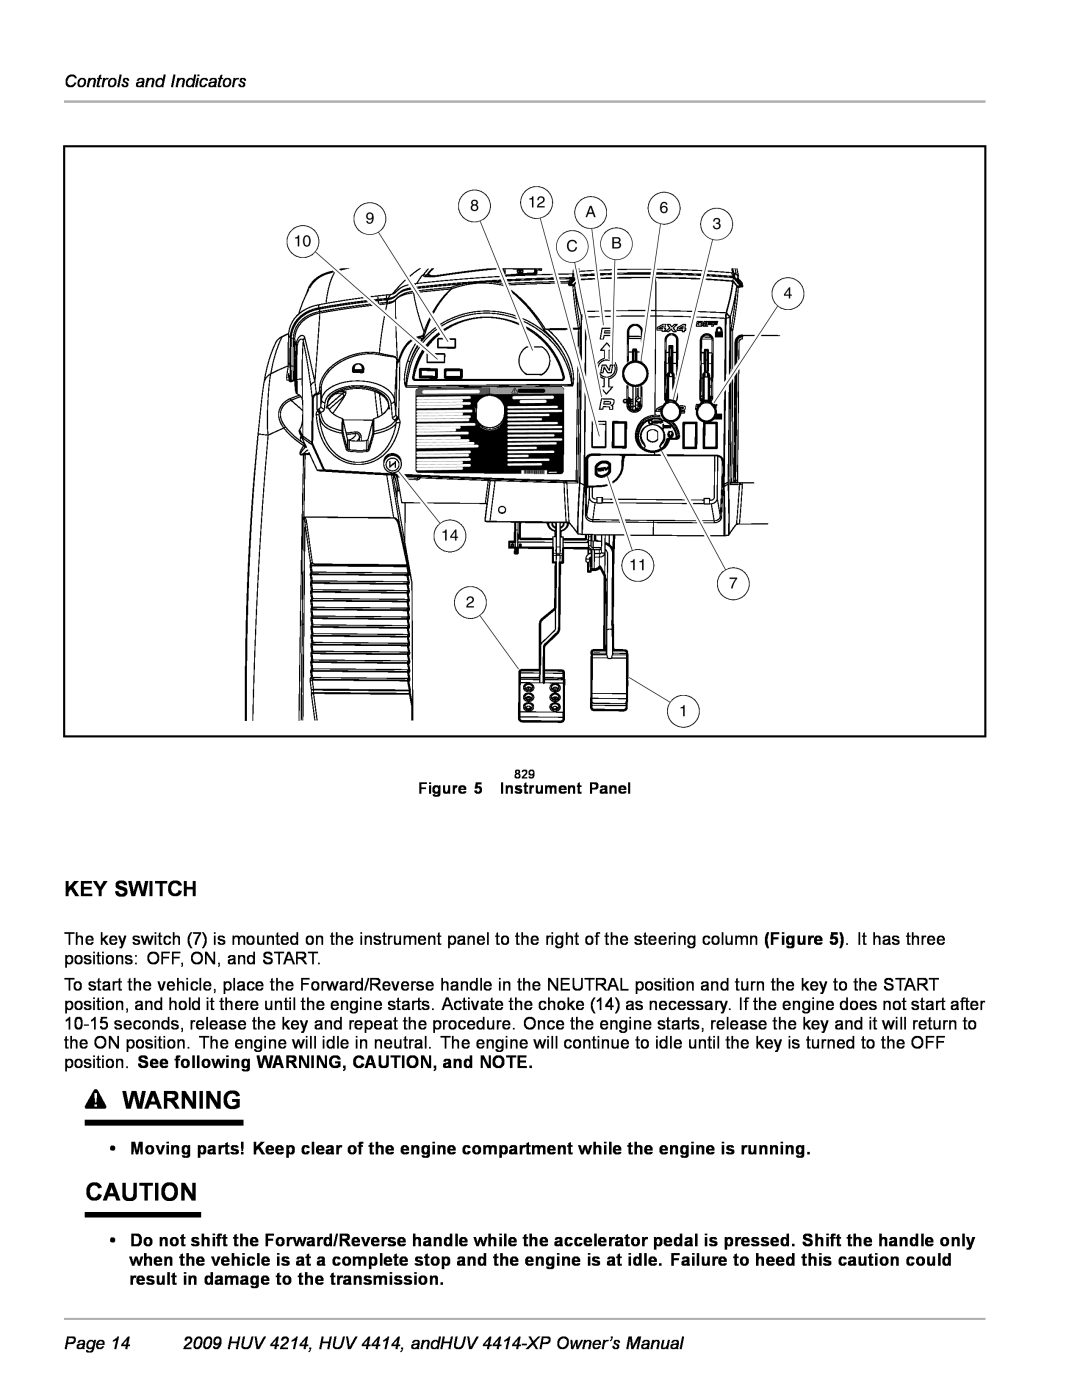 Husqvarna Key Switch, Page 14 2009 HUV 4214, HUV 4414, andHUV 4414-XP Owner’s Manual, Controls and Indicators 